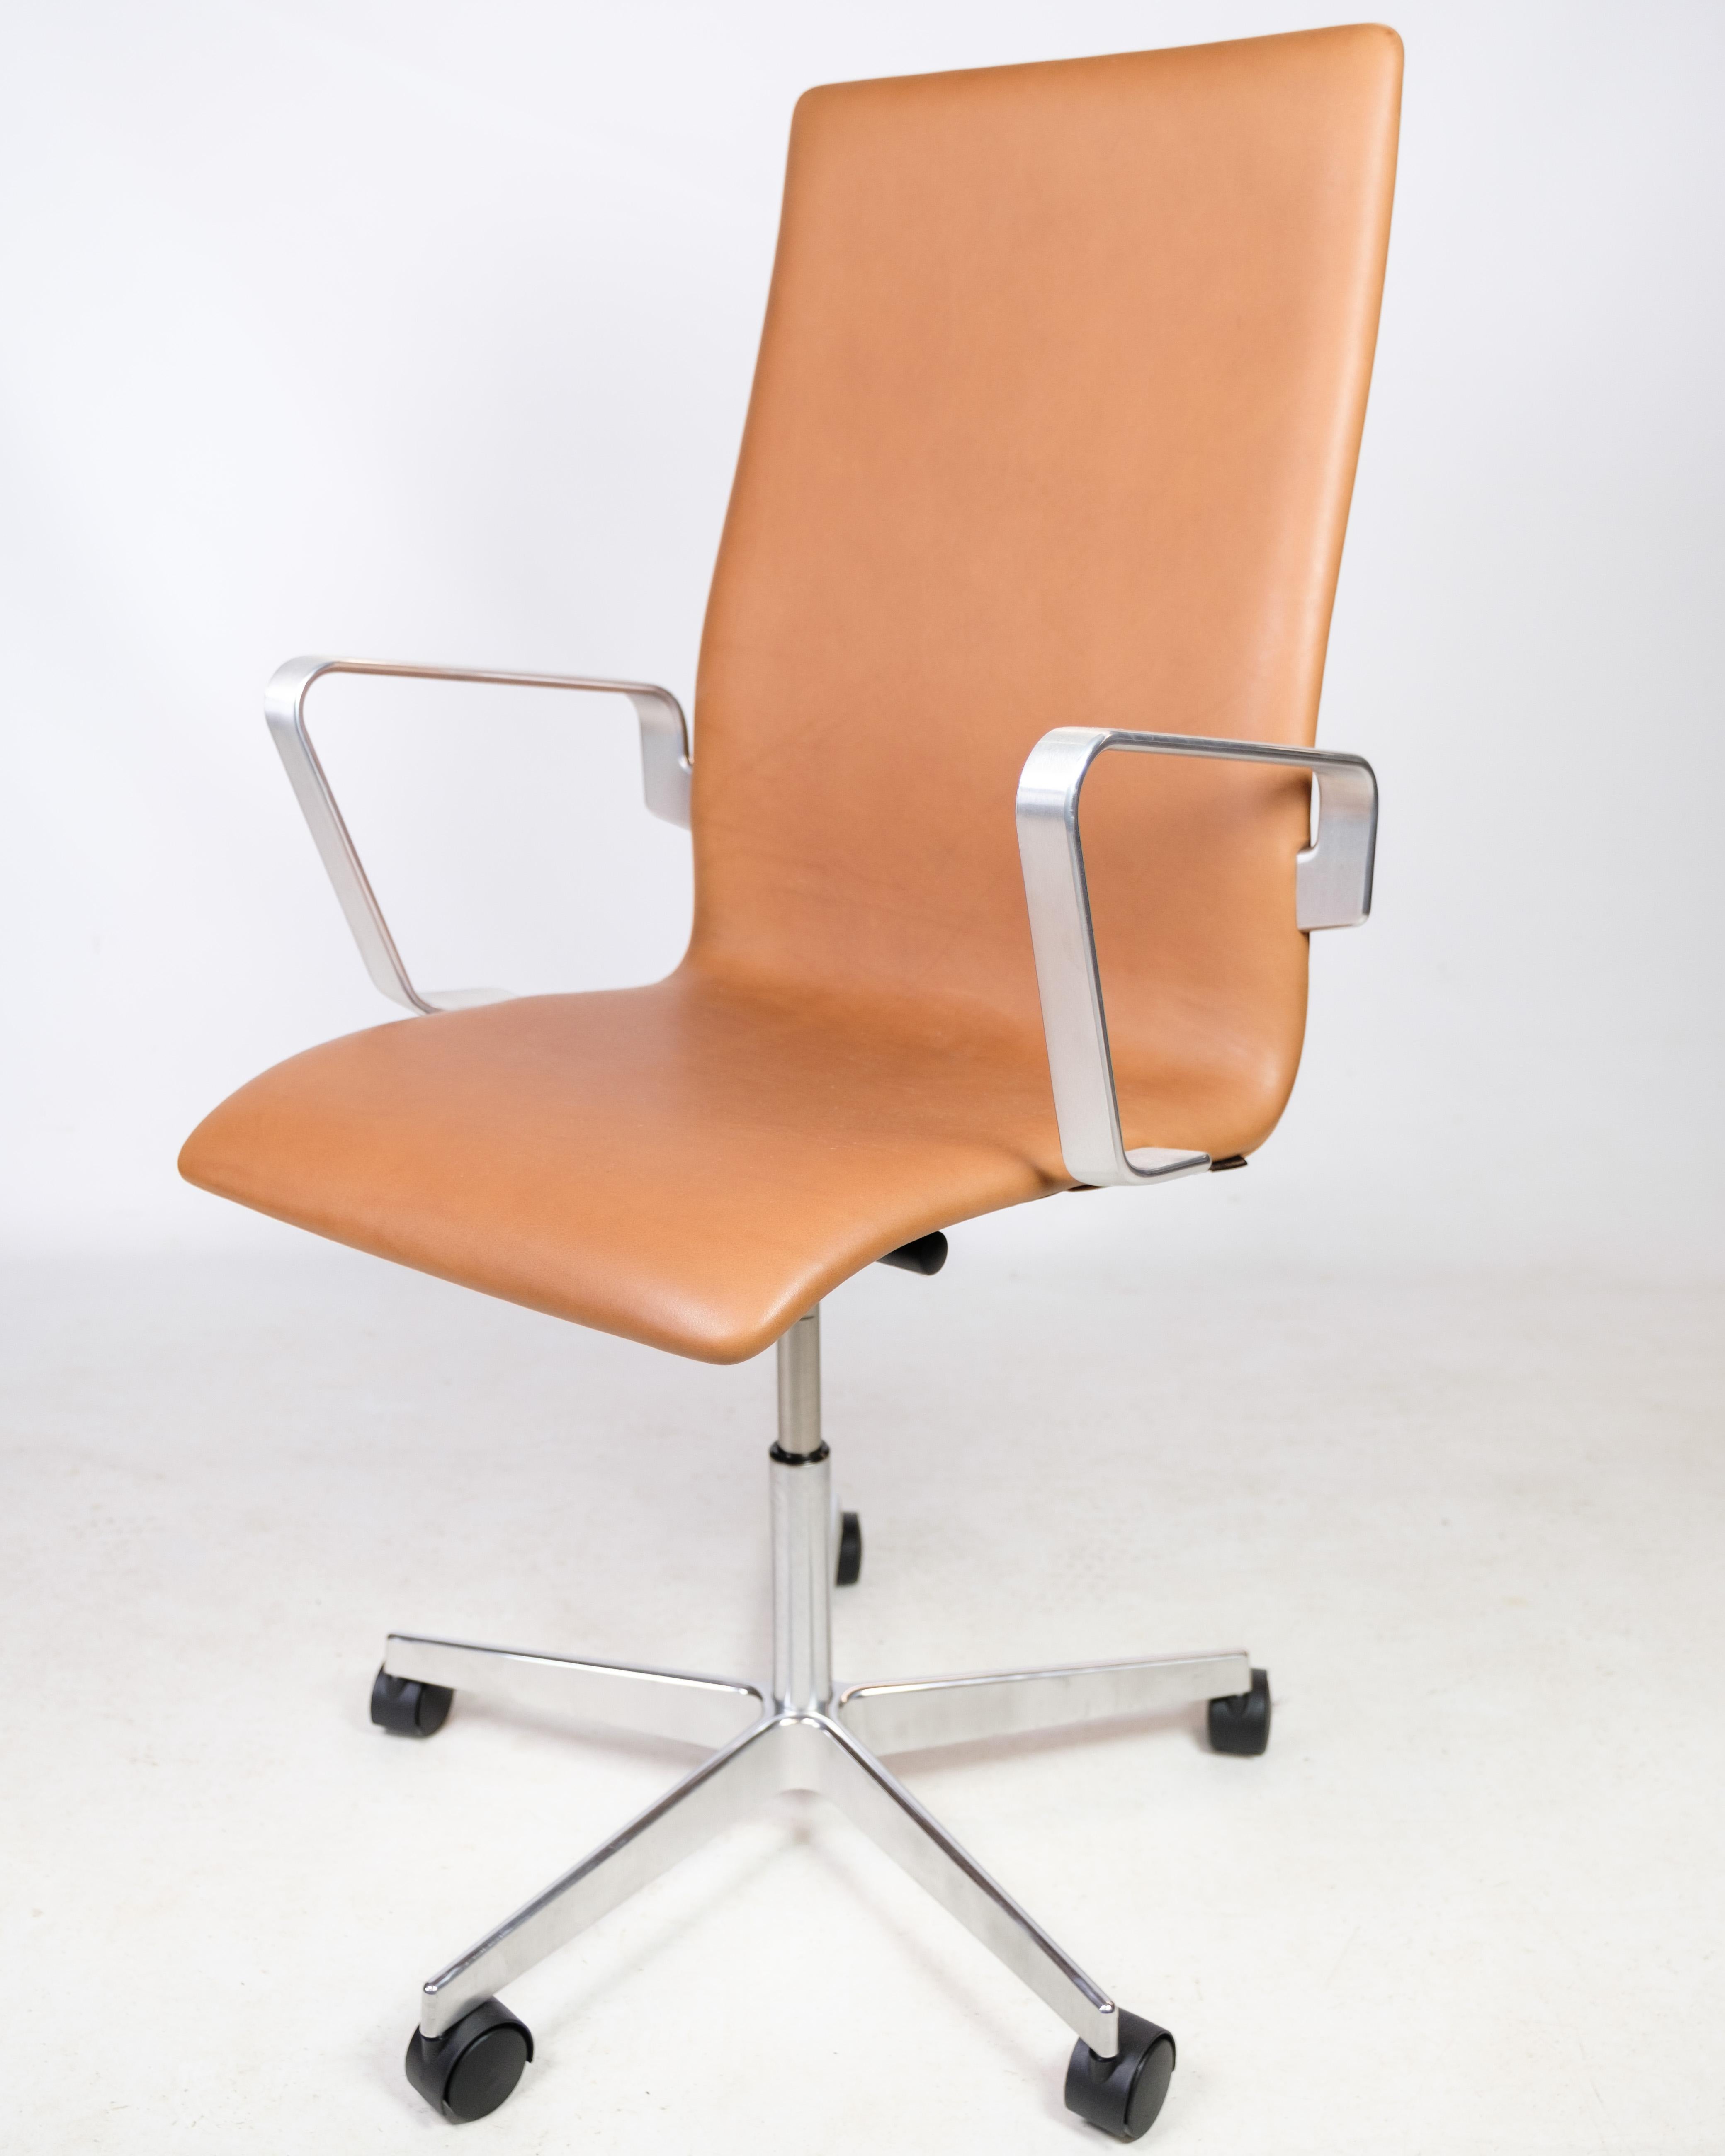 Oxford Classic Bürostuhl, Modell 3293C, mit originaler cognacfarbener Lederpolsterung, 1963 von Arne Jacobsen entworfen und von Fritz Hansen hergestellt. Der Stuhl ist in einem guten gebrauchten Zustand.
Maße: H - 100-113, B - 60 cm, T - 60 cm und